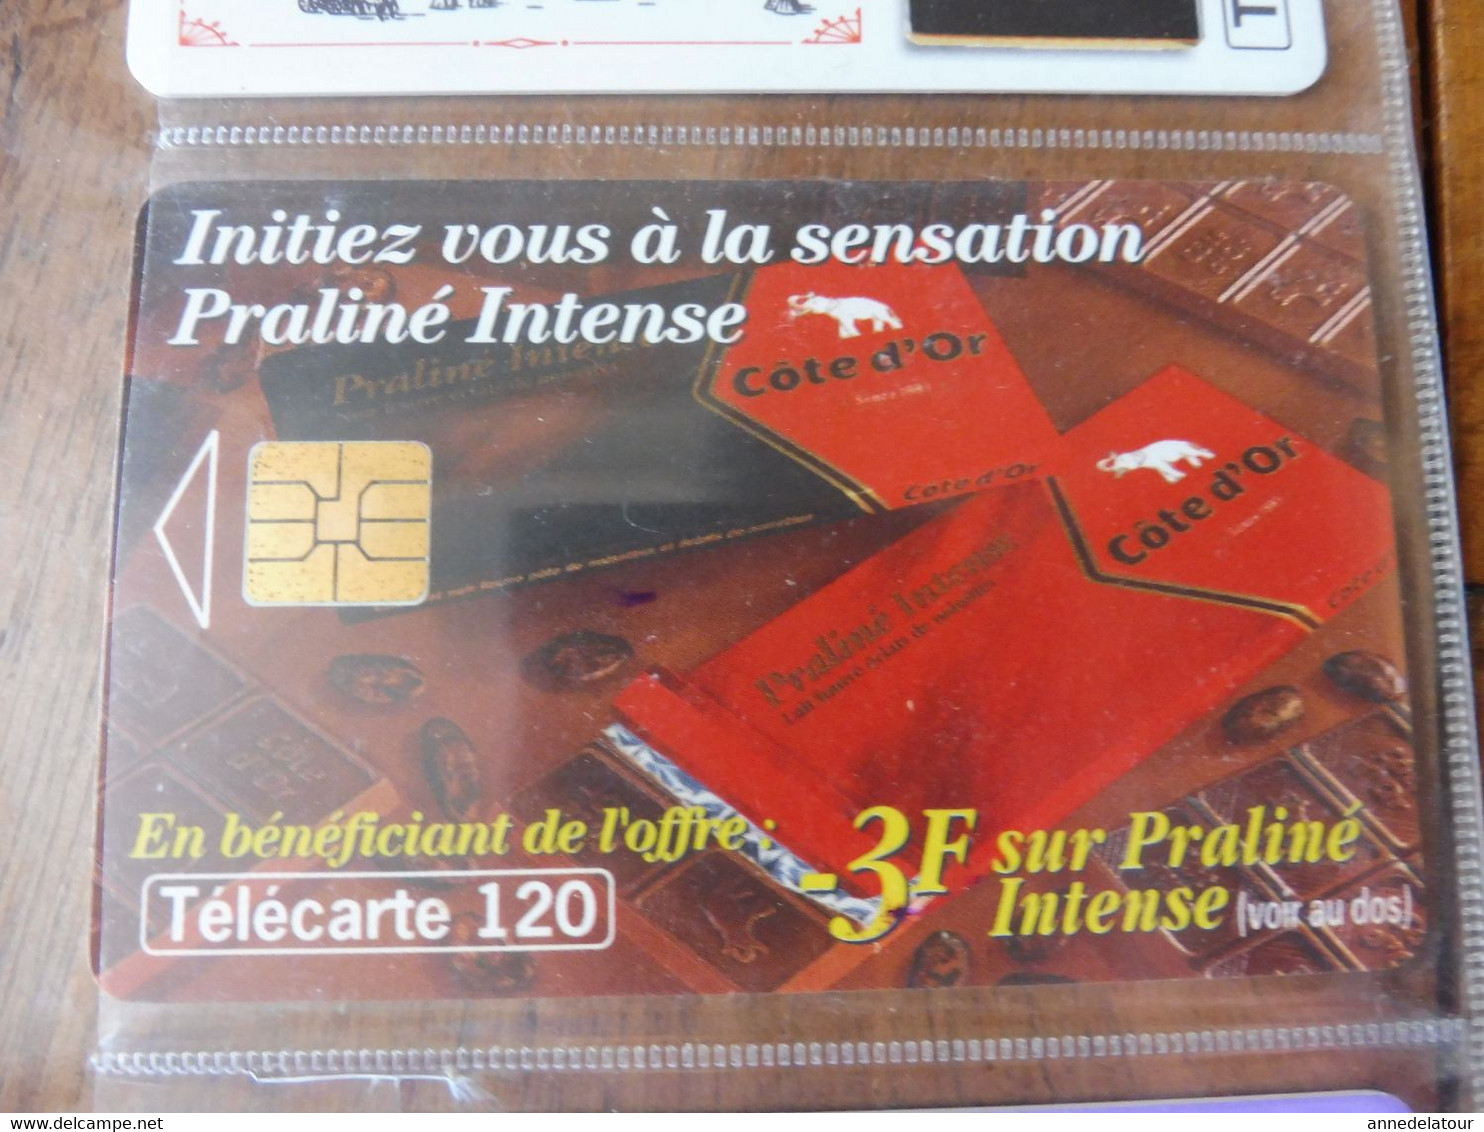 8 Télécartes (cartes téléphoniques)  FRANCE TELECOM   chocolateries ou friandises